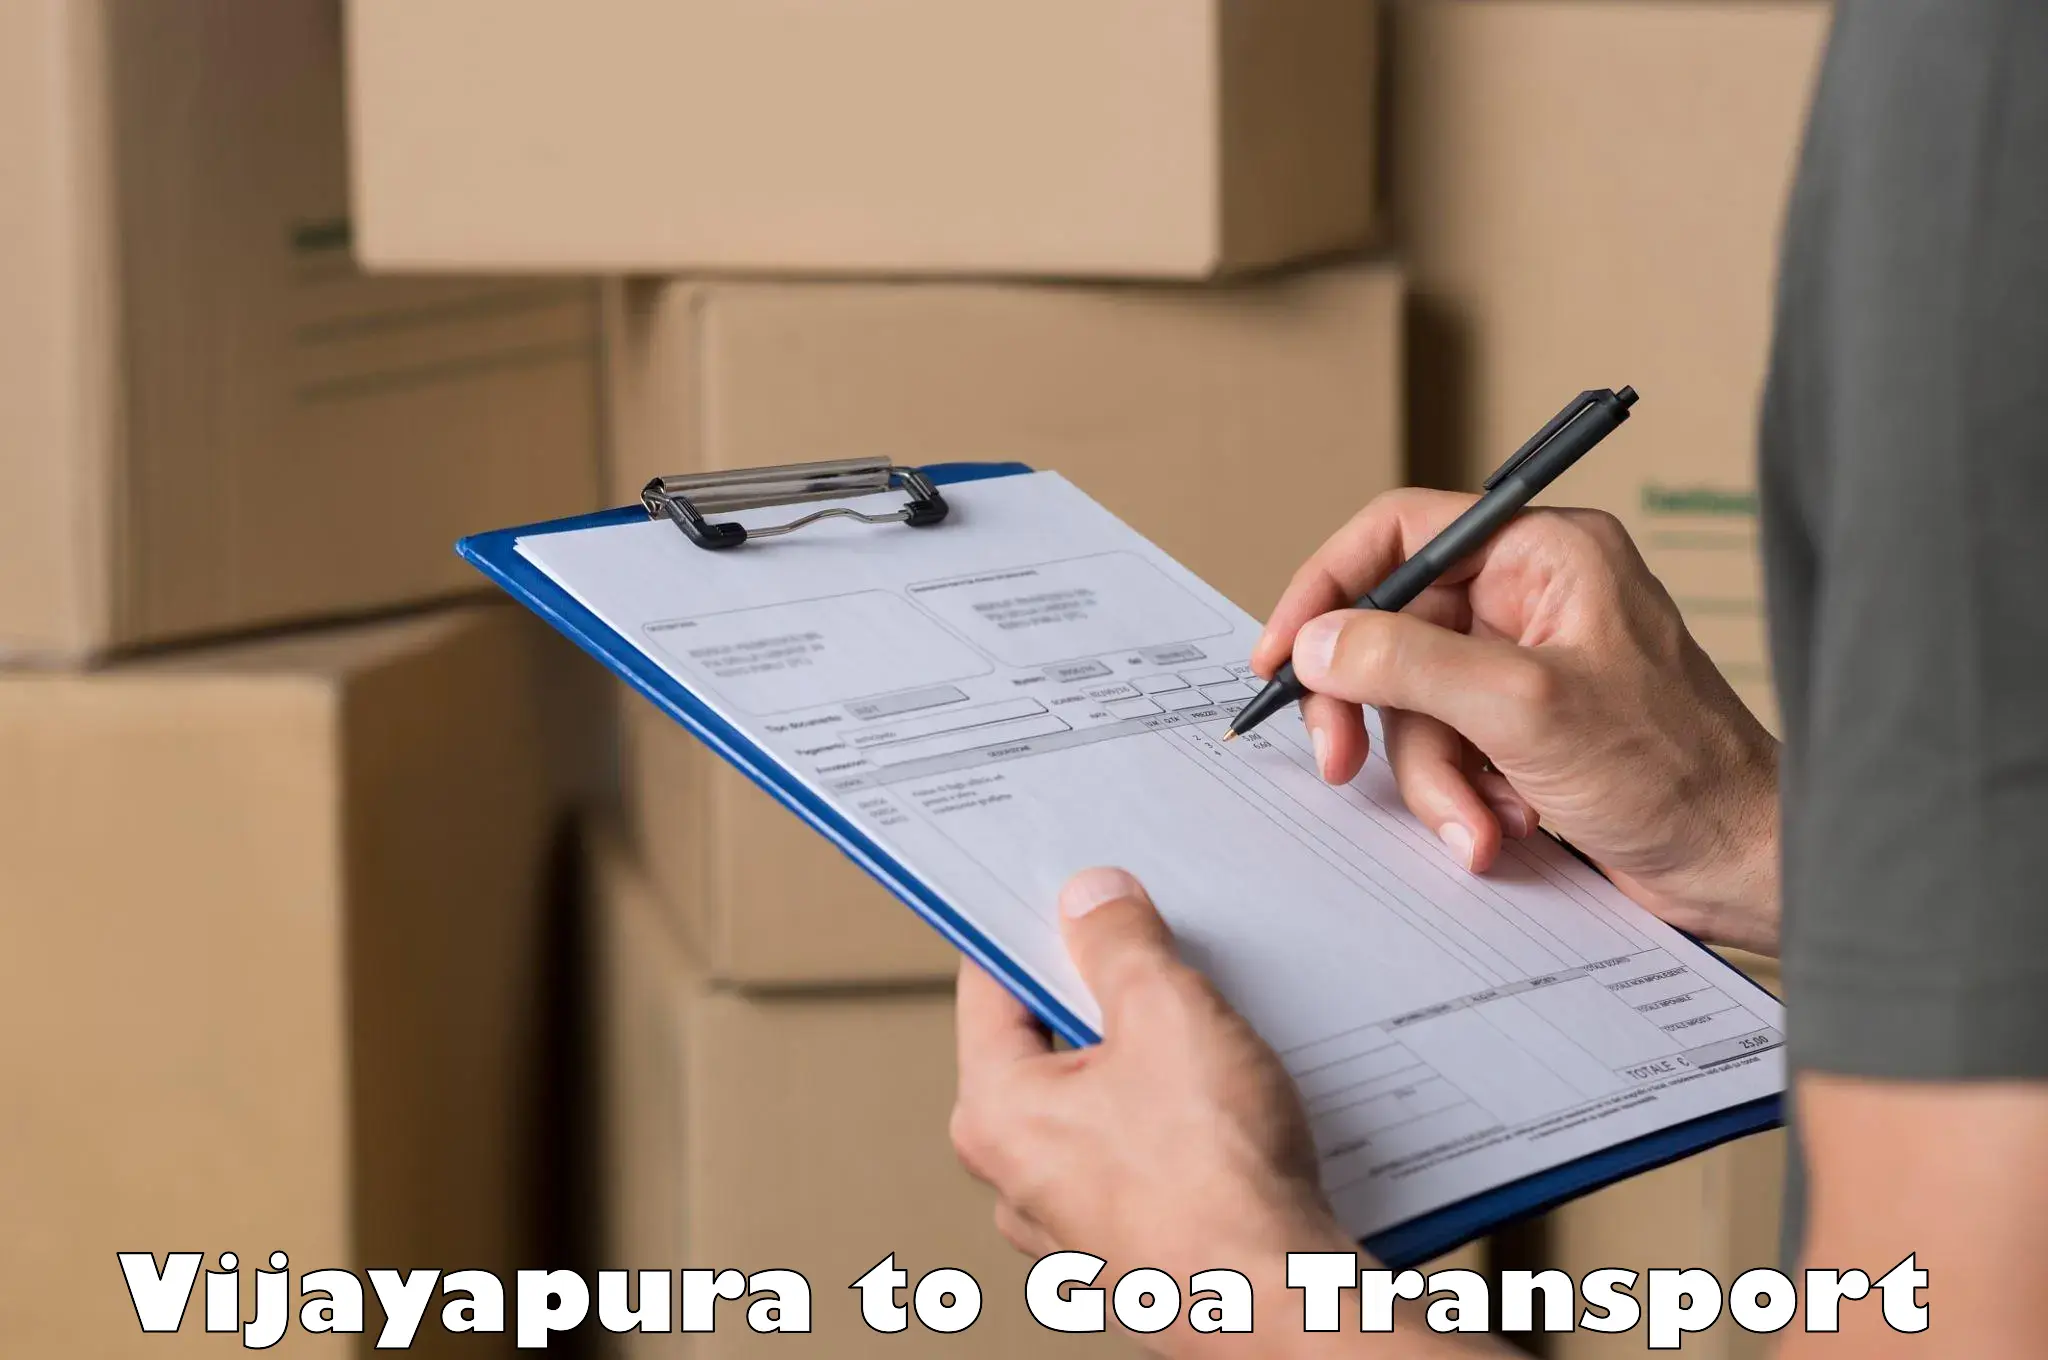 Furniture transport service Vijayapura to Goa